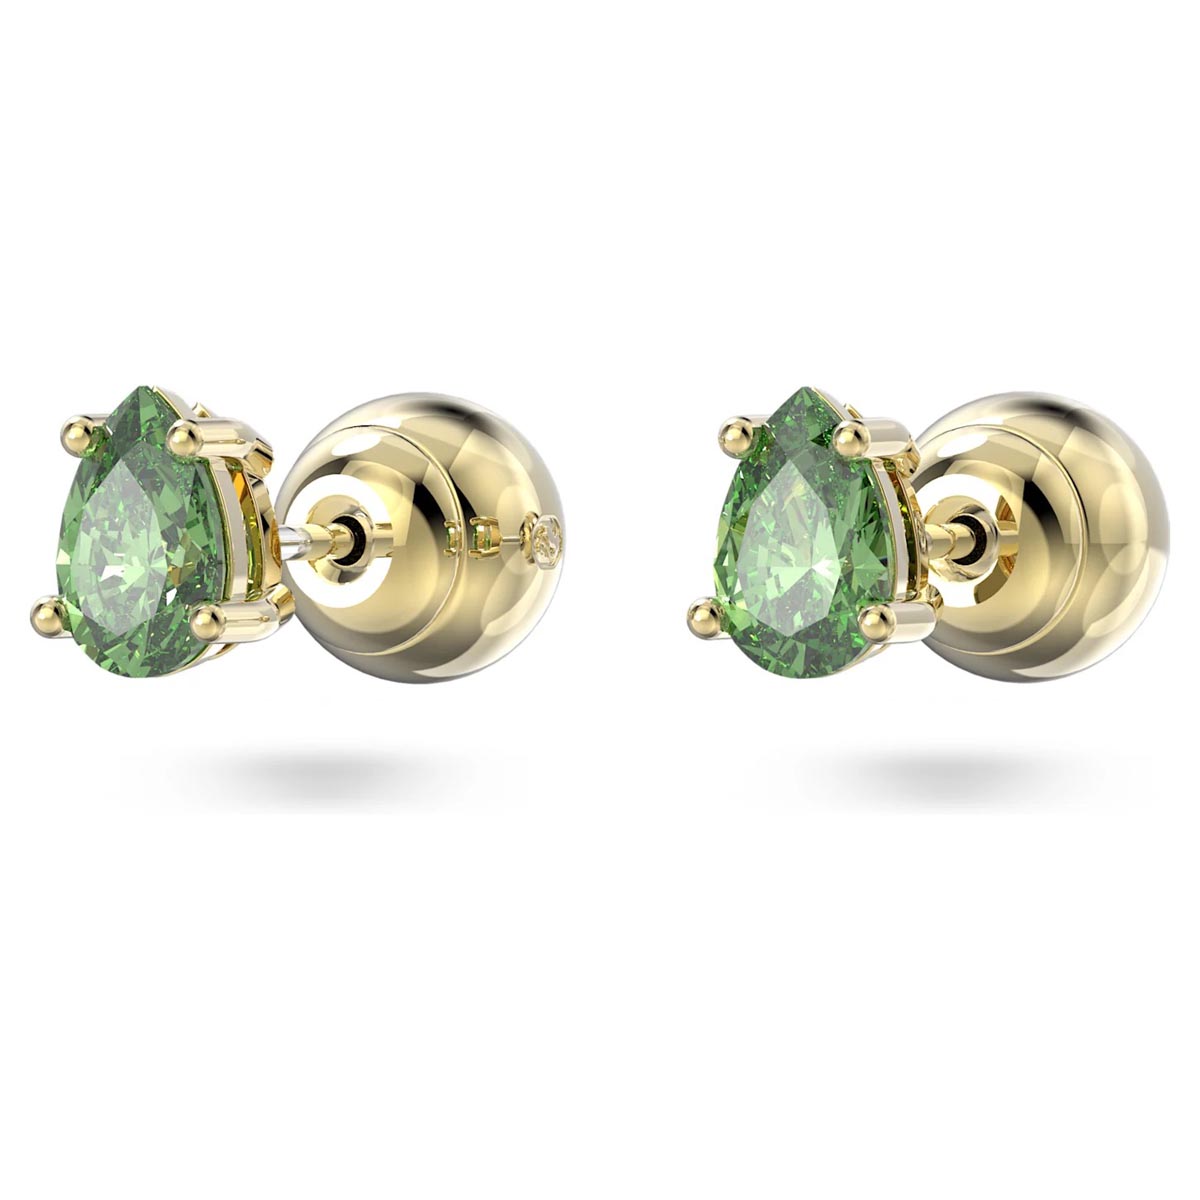 Emerald Green Earrings Swarovski Crystal Green Rhinestone Earrings Tear Drop  Post Dangle or Clip on E… | Emerald green earrings, Beautiful jewelry, Jewelry  earrings